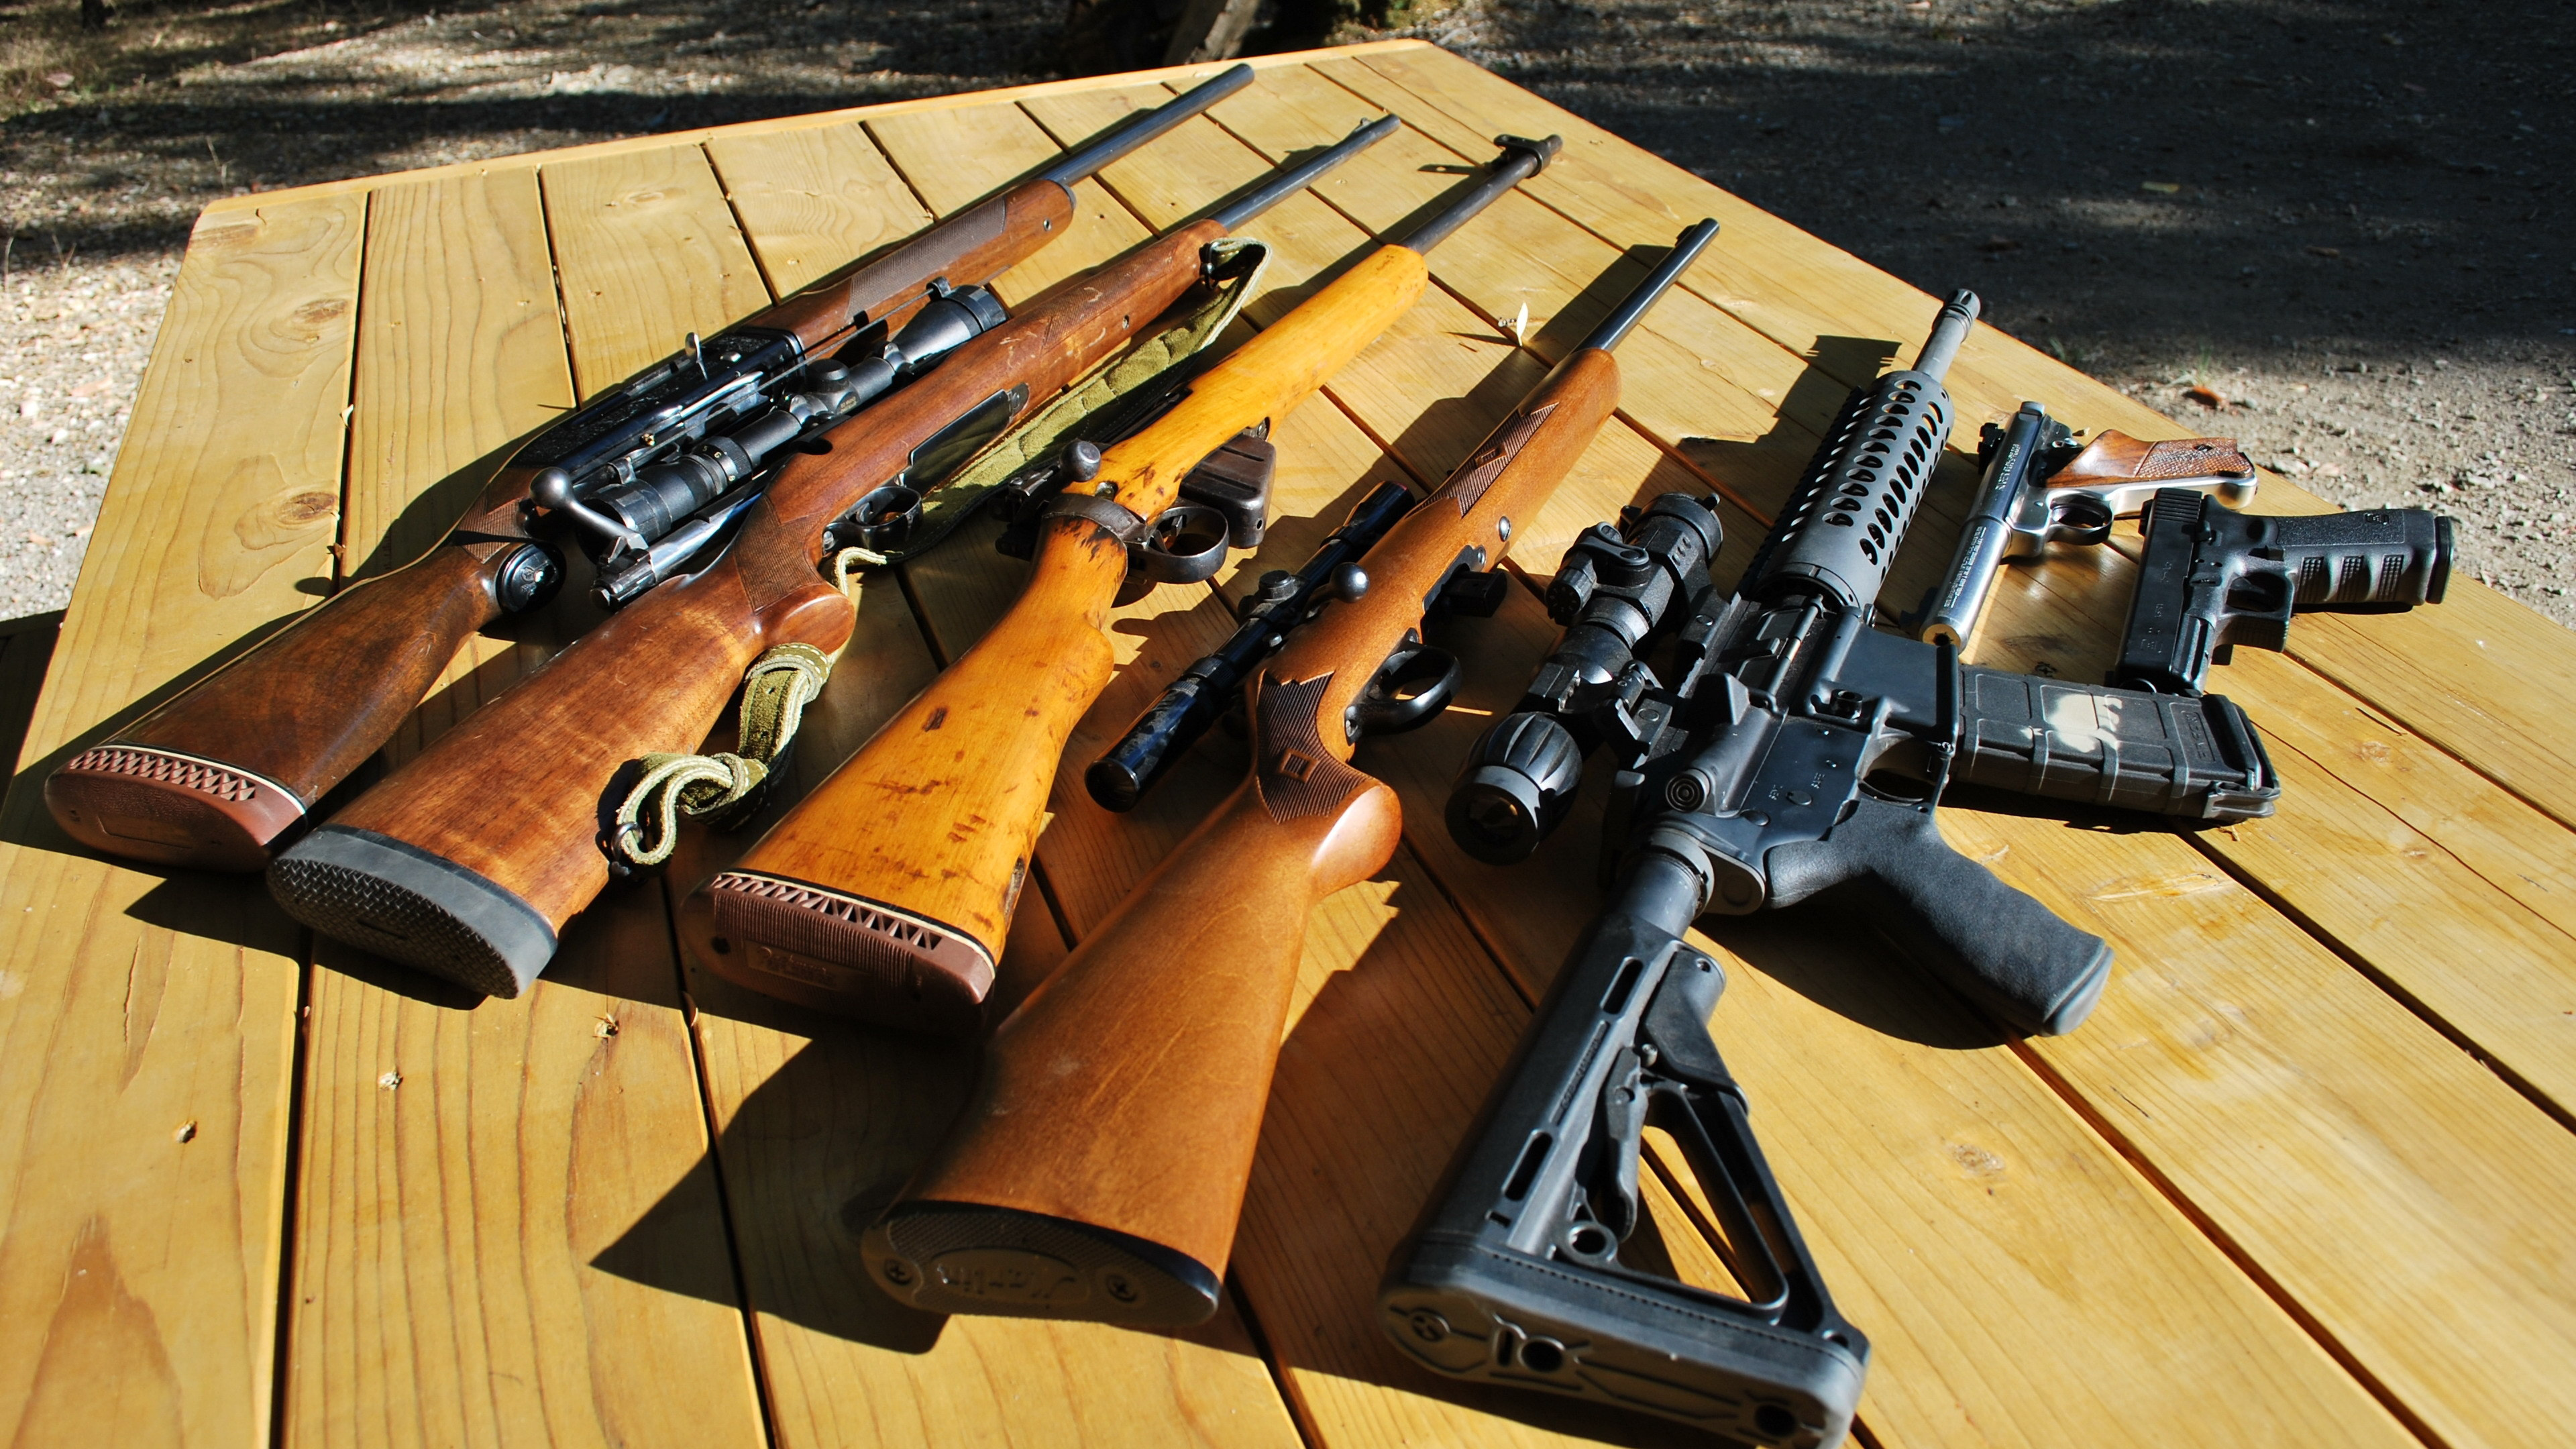 Feuerwaffe, Luftgewehr, Airsoft Gun, Gewehr, Zivilwaffe. Wallpaper in 3840x2160 Resolution